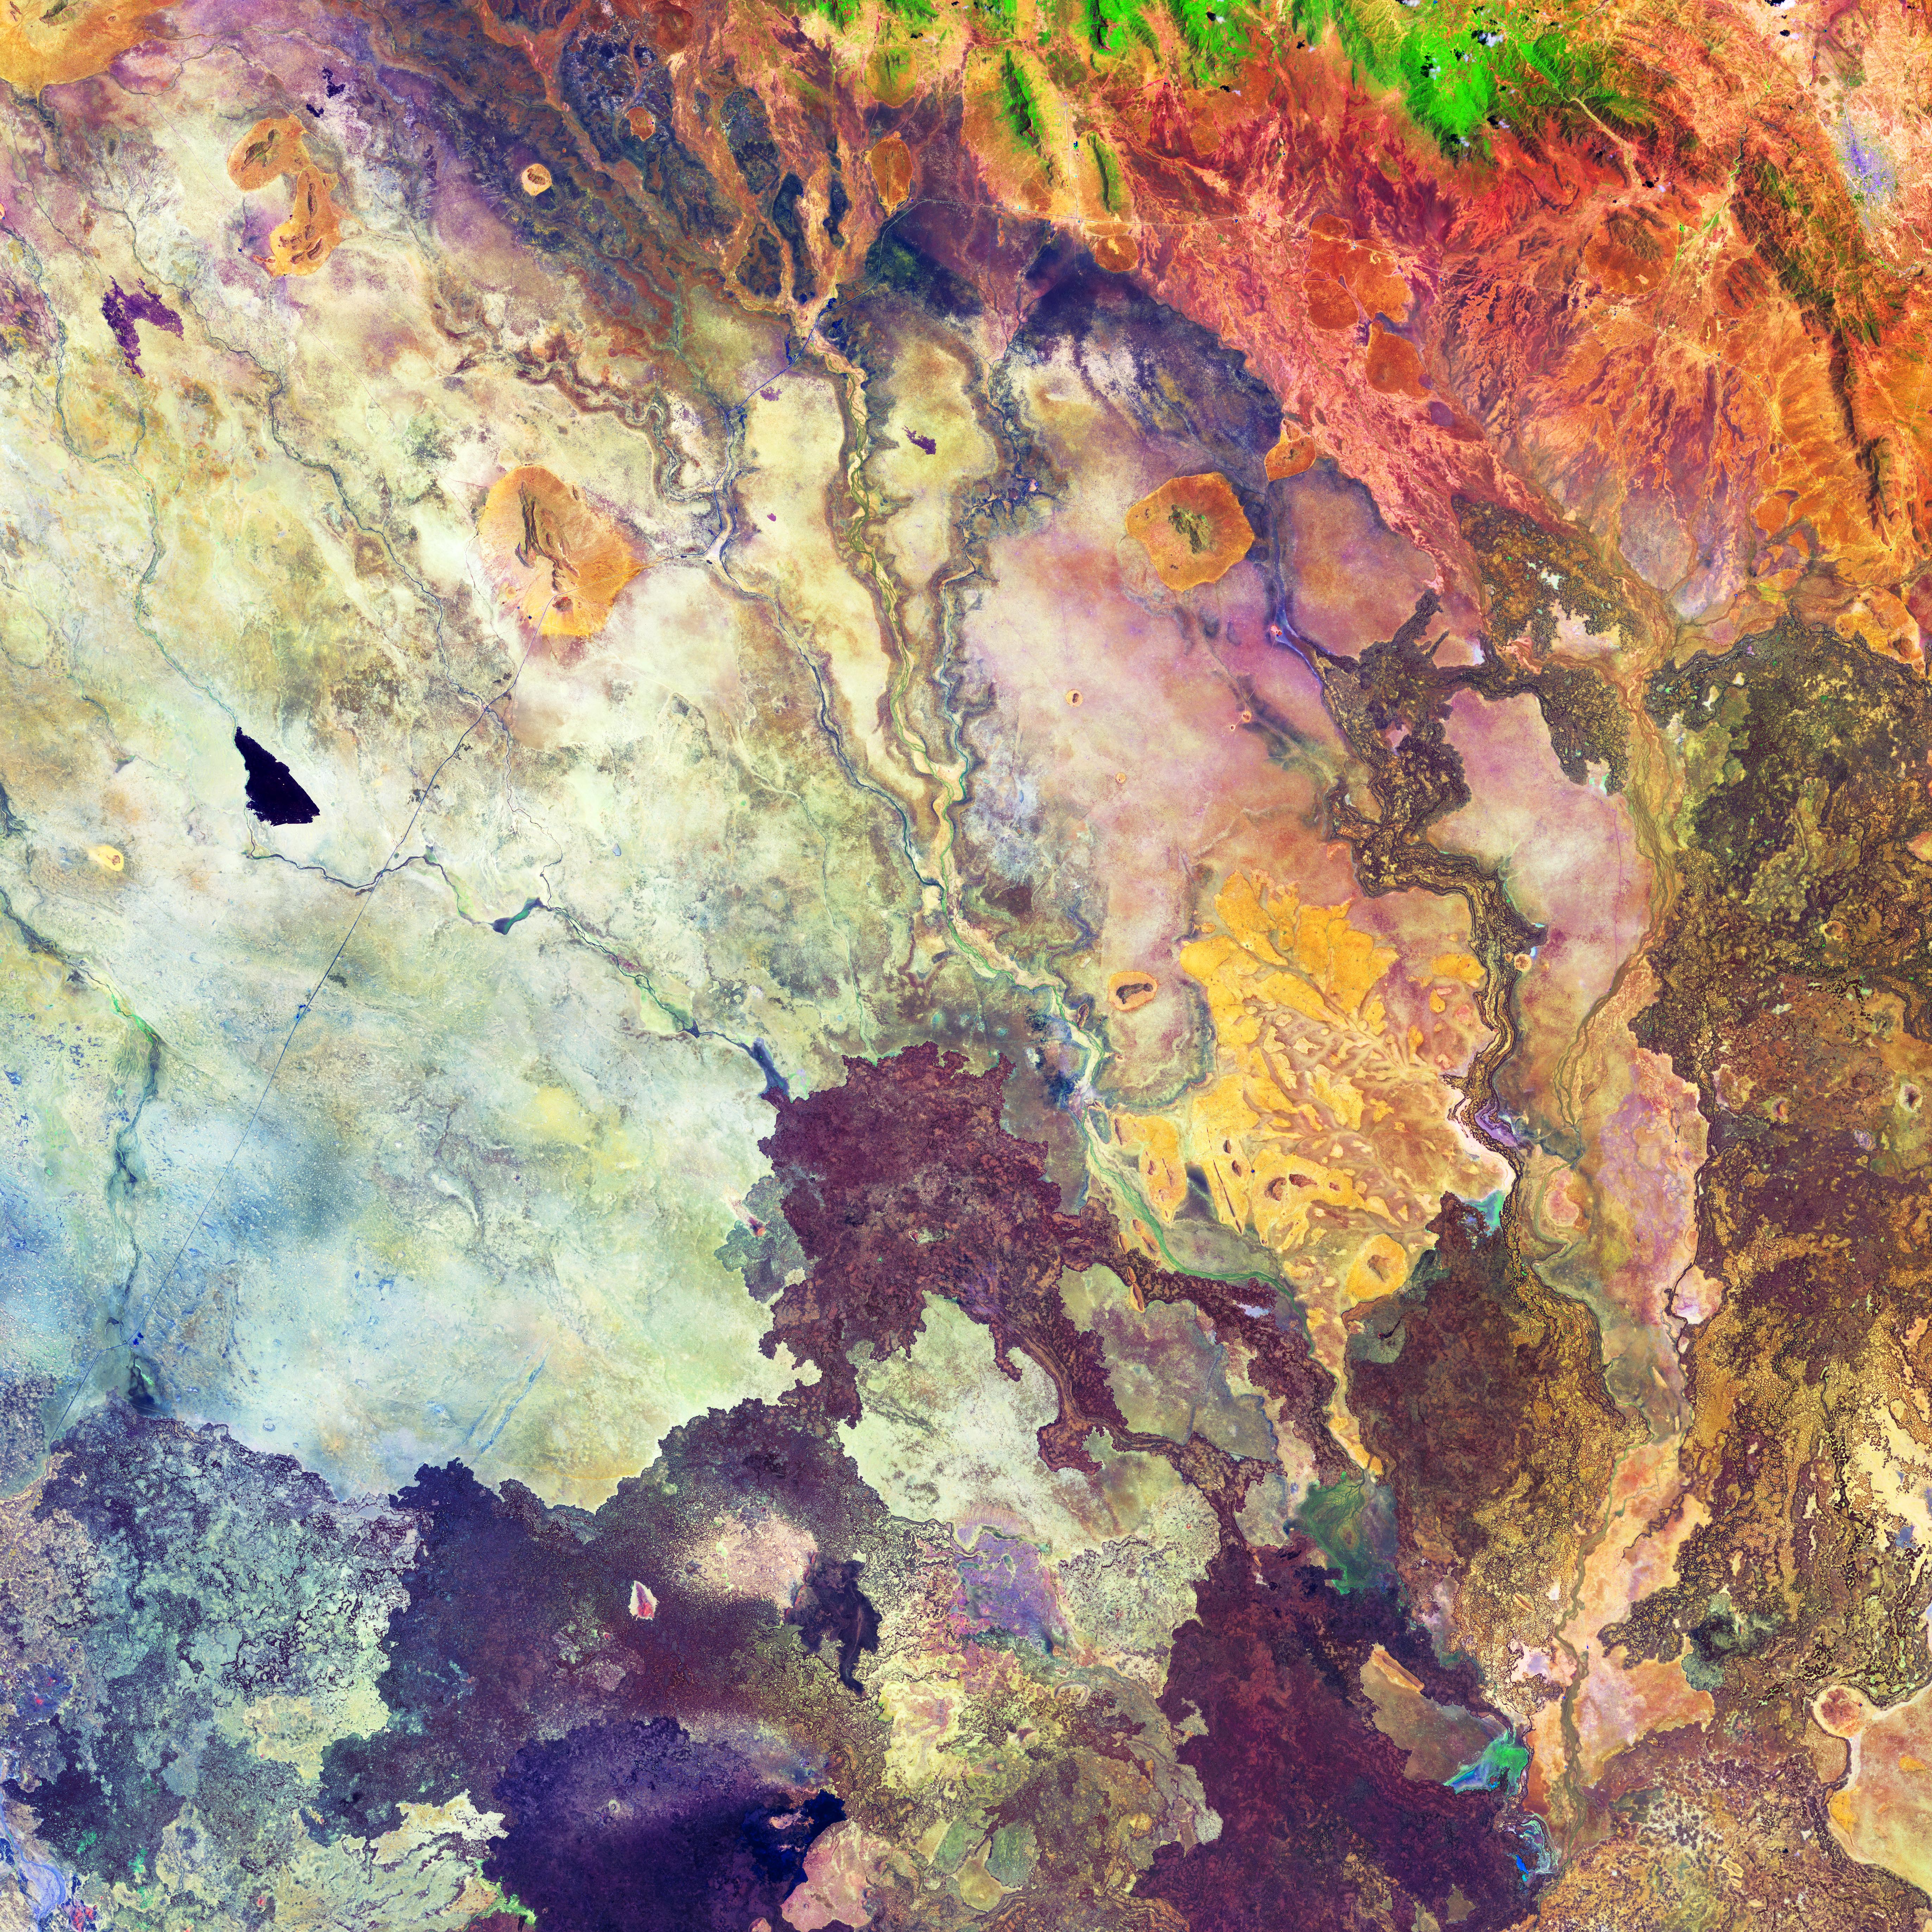 Das Bild zeigt eine felsige Landschaft in zahlreichen bunten Farben.